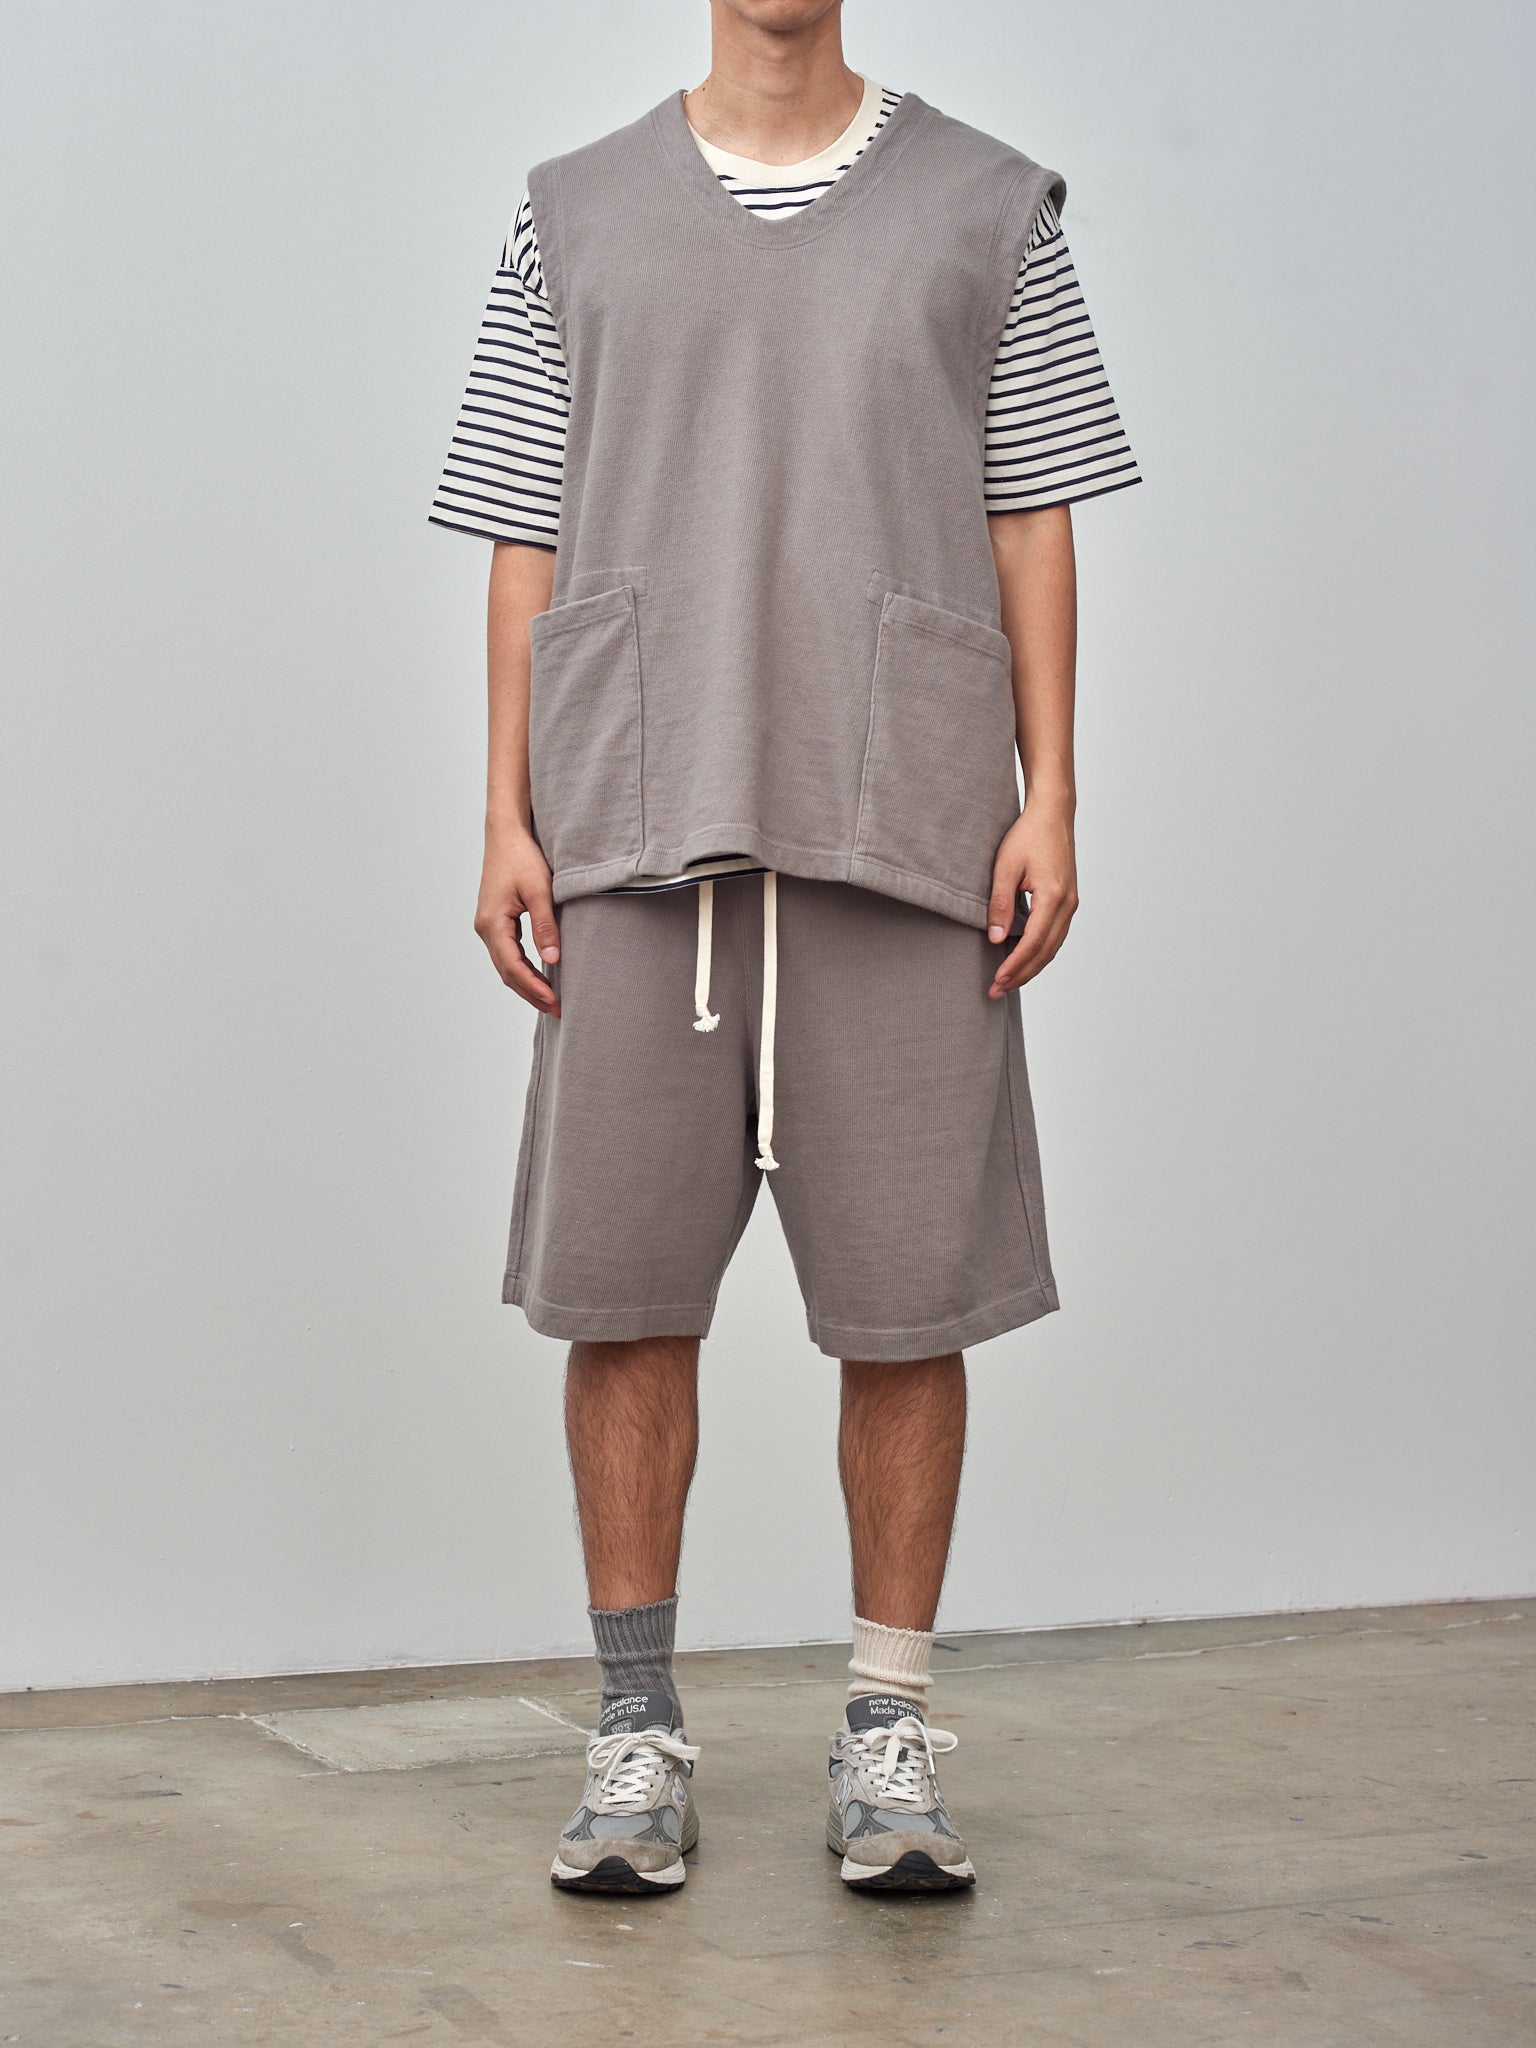 Namu Shop - ts(s) Soft Heavy Jersey Easy Big Shorts - Gray